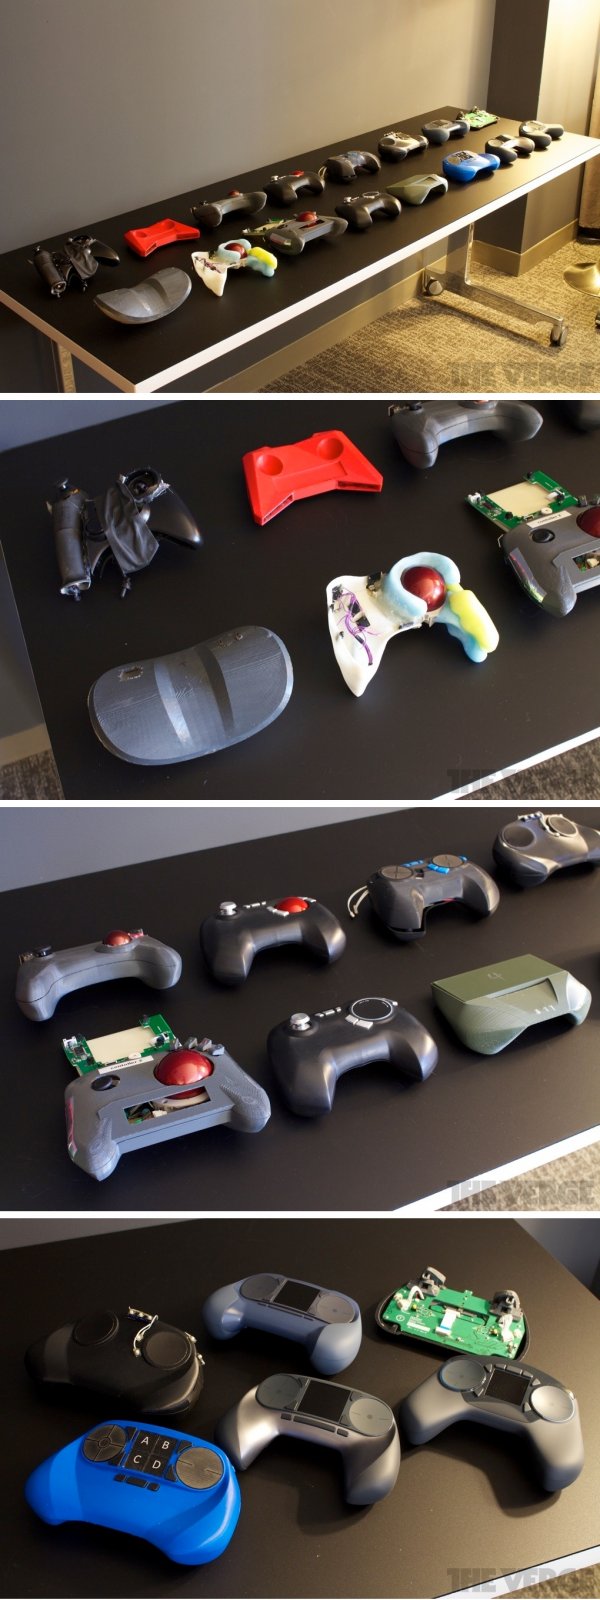 Valve's controller Prototypes